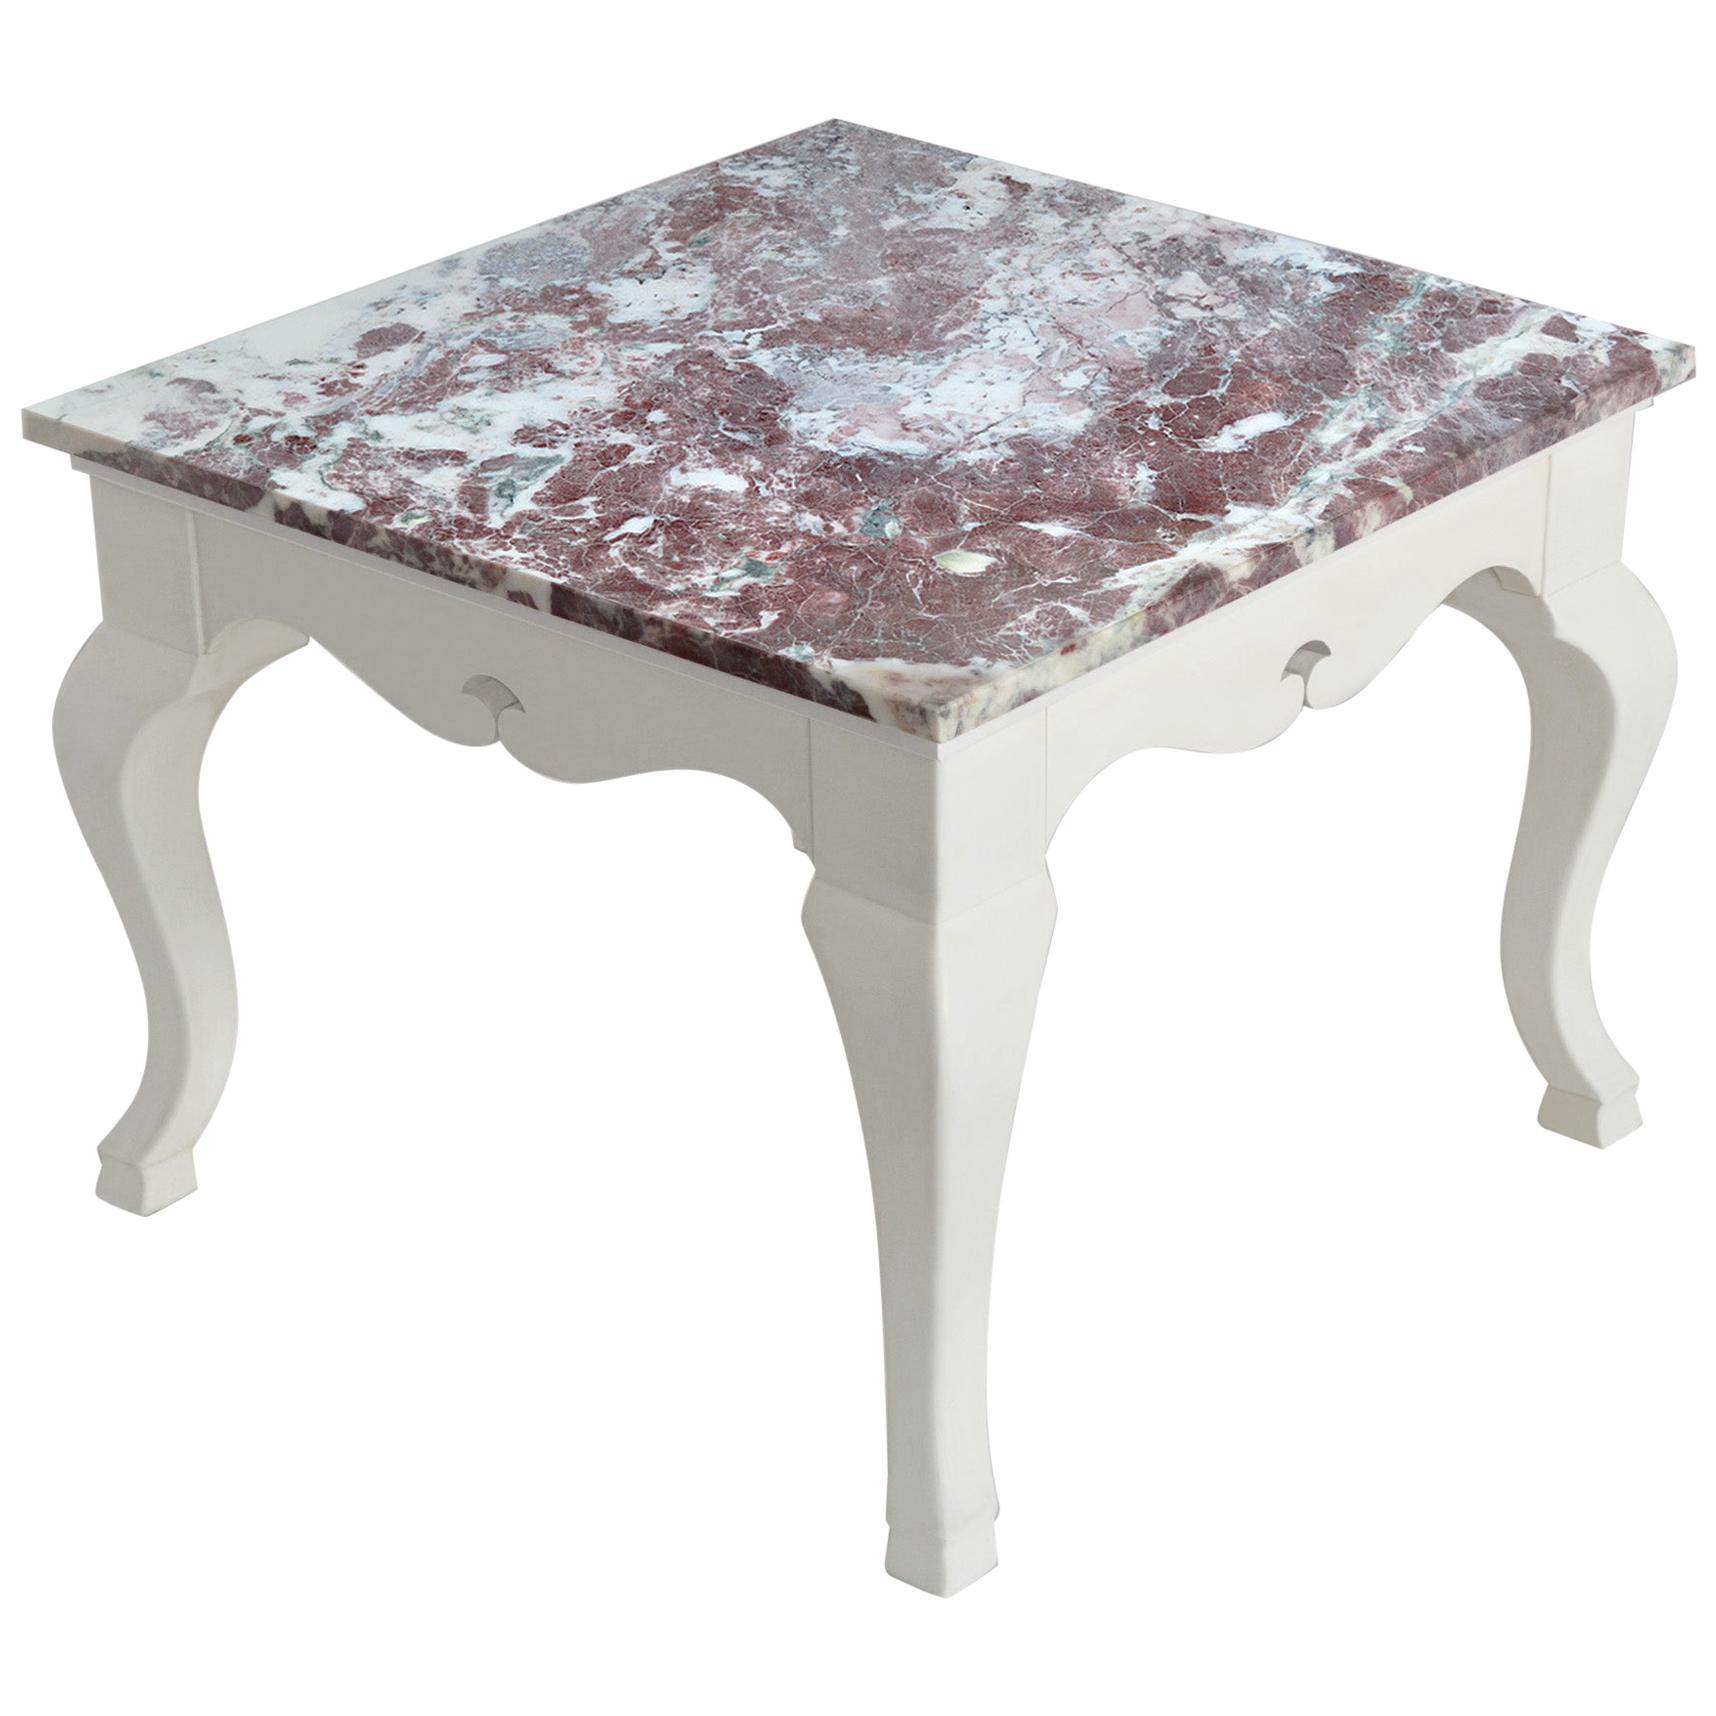 Table d'appoint plateau en marbre rouge base en bois blanc fait main en Italie par Cupioli 